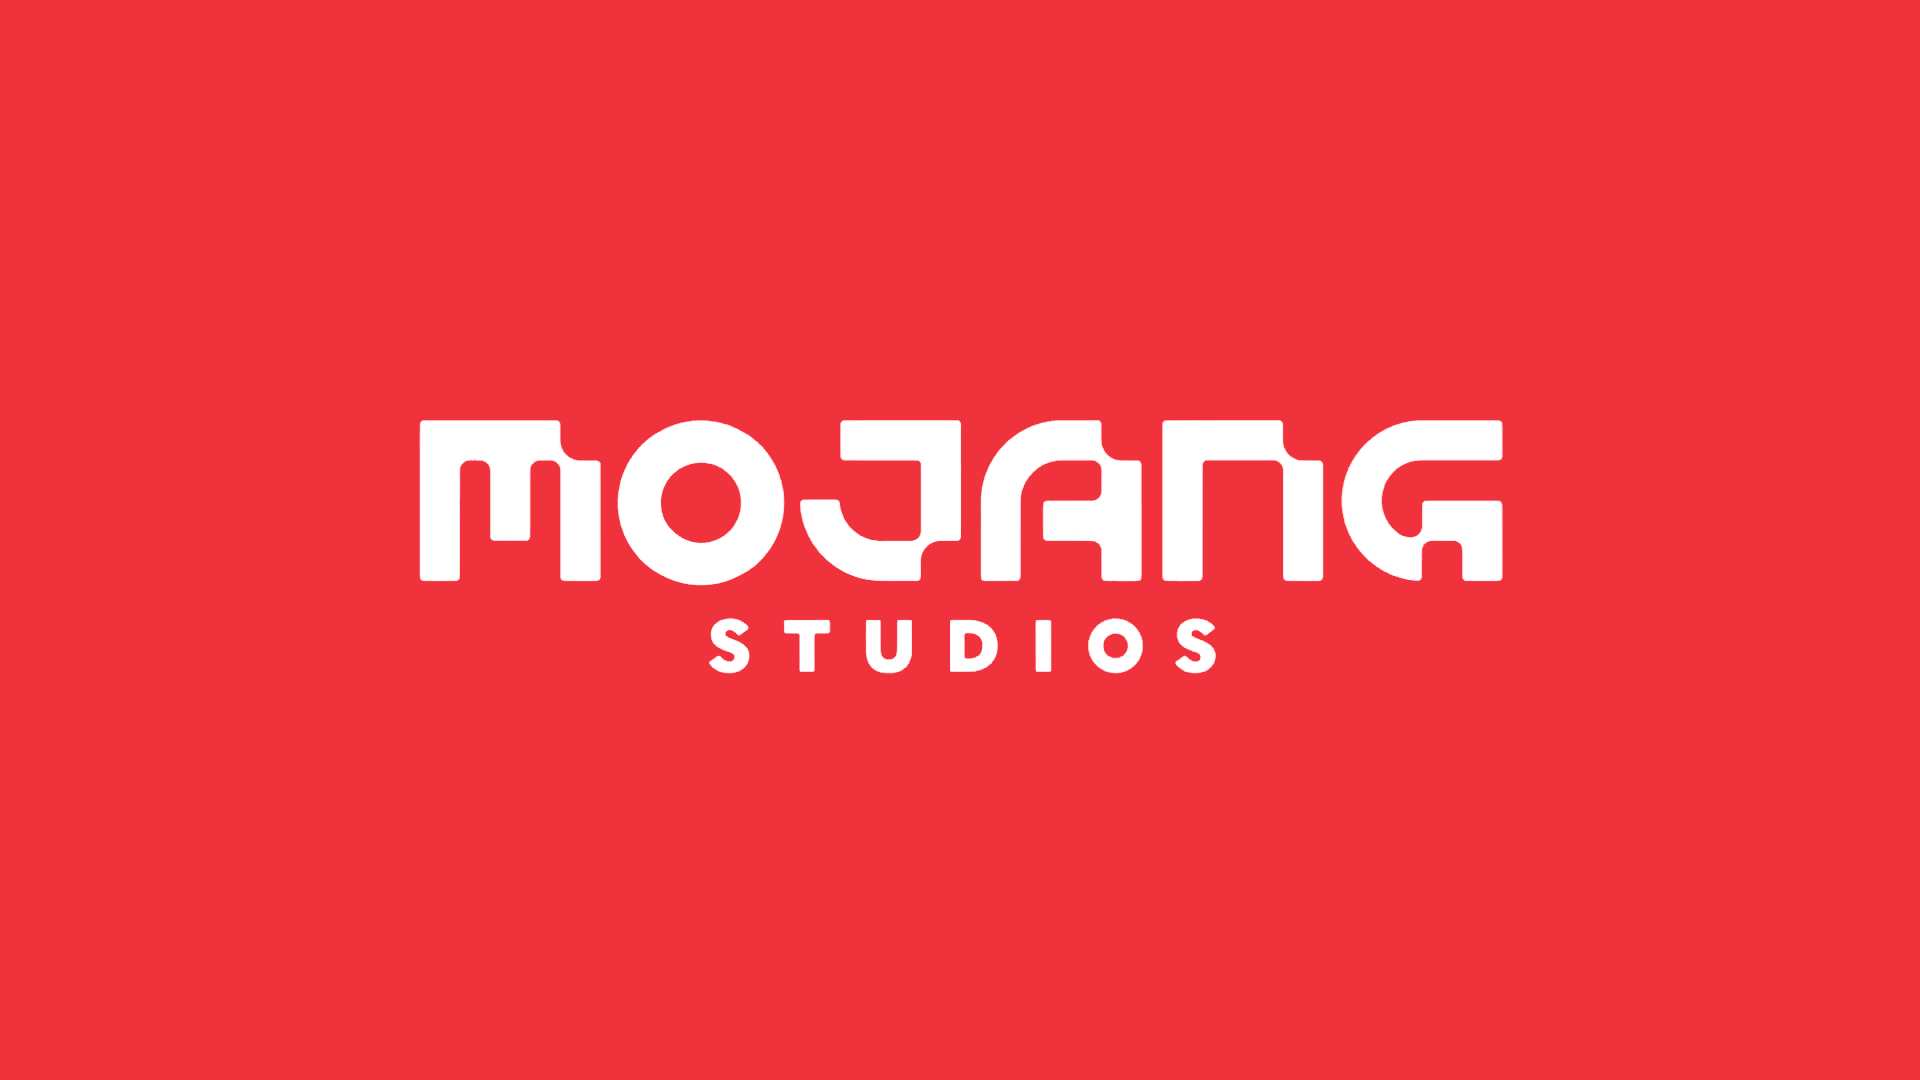 《我的世界》开发商 Mojang Studios 启用全新品牌LOGO